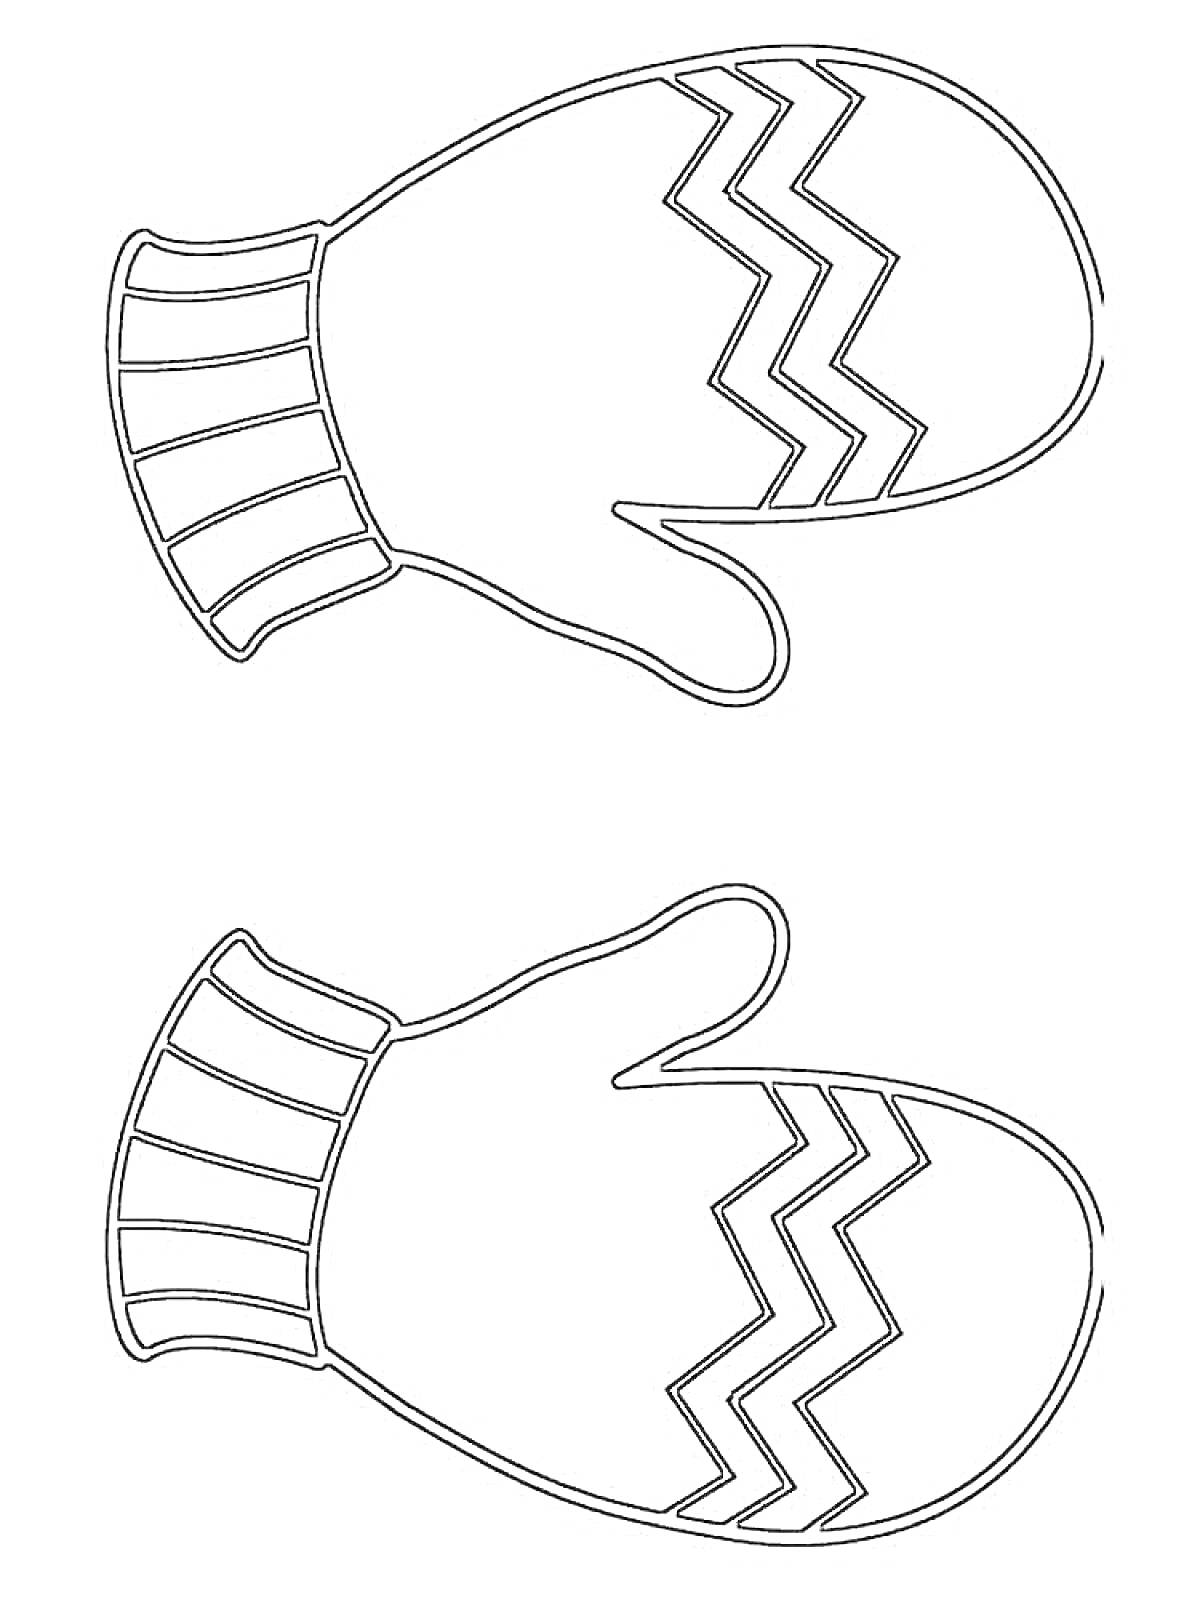 Раскраска рукавицы с зигзагообразным узором и полосатыми манжетами